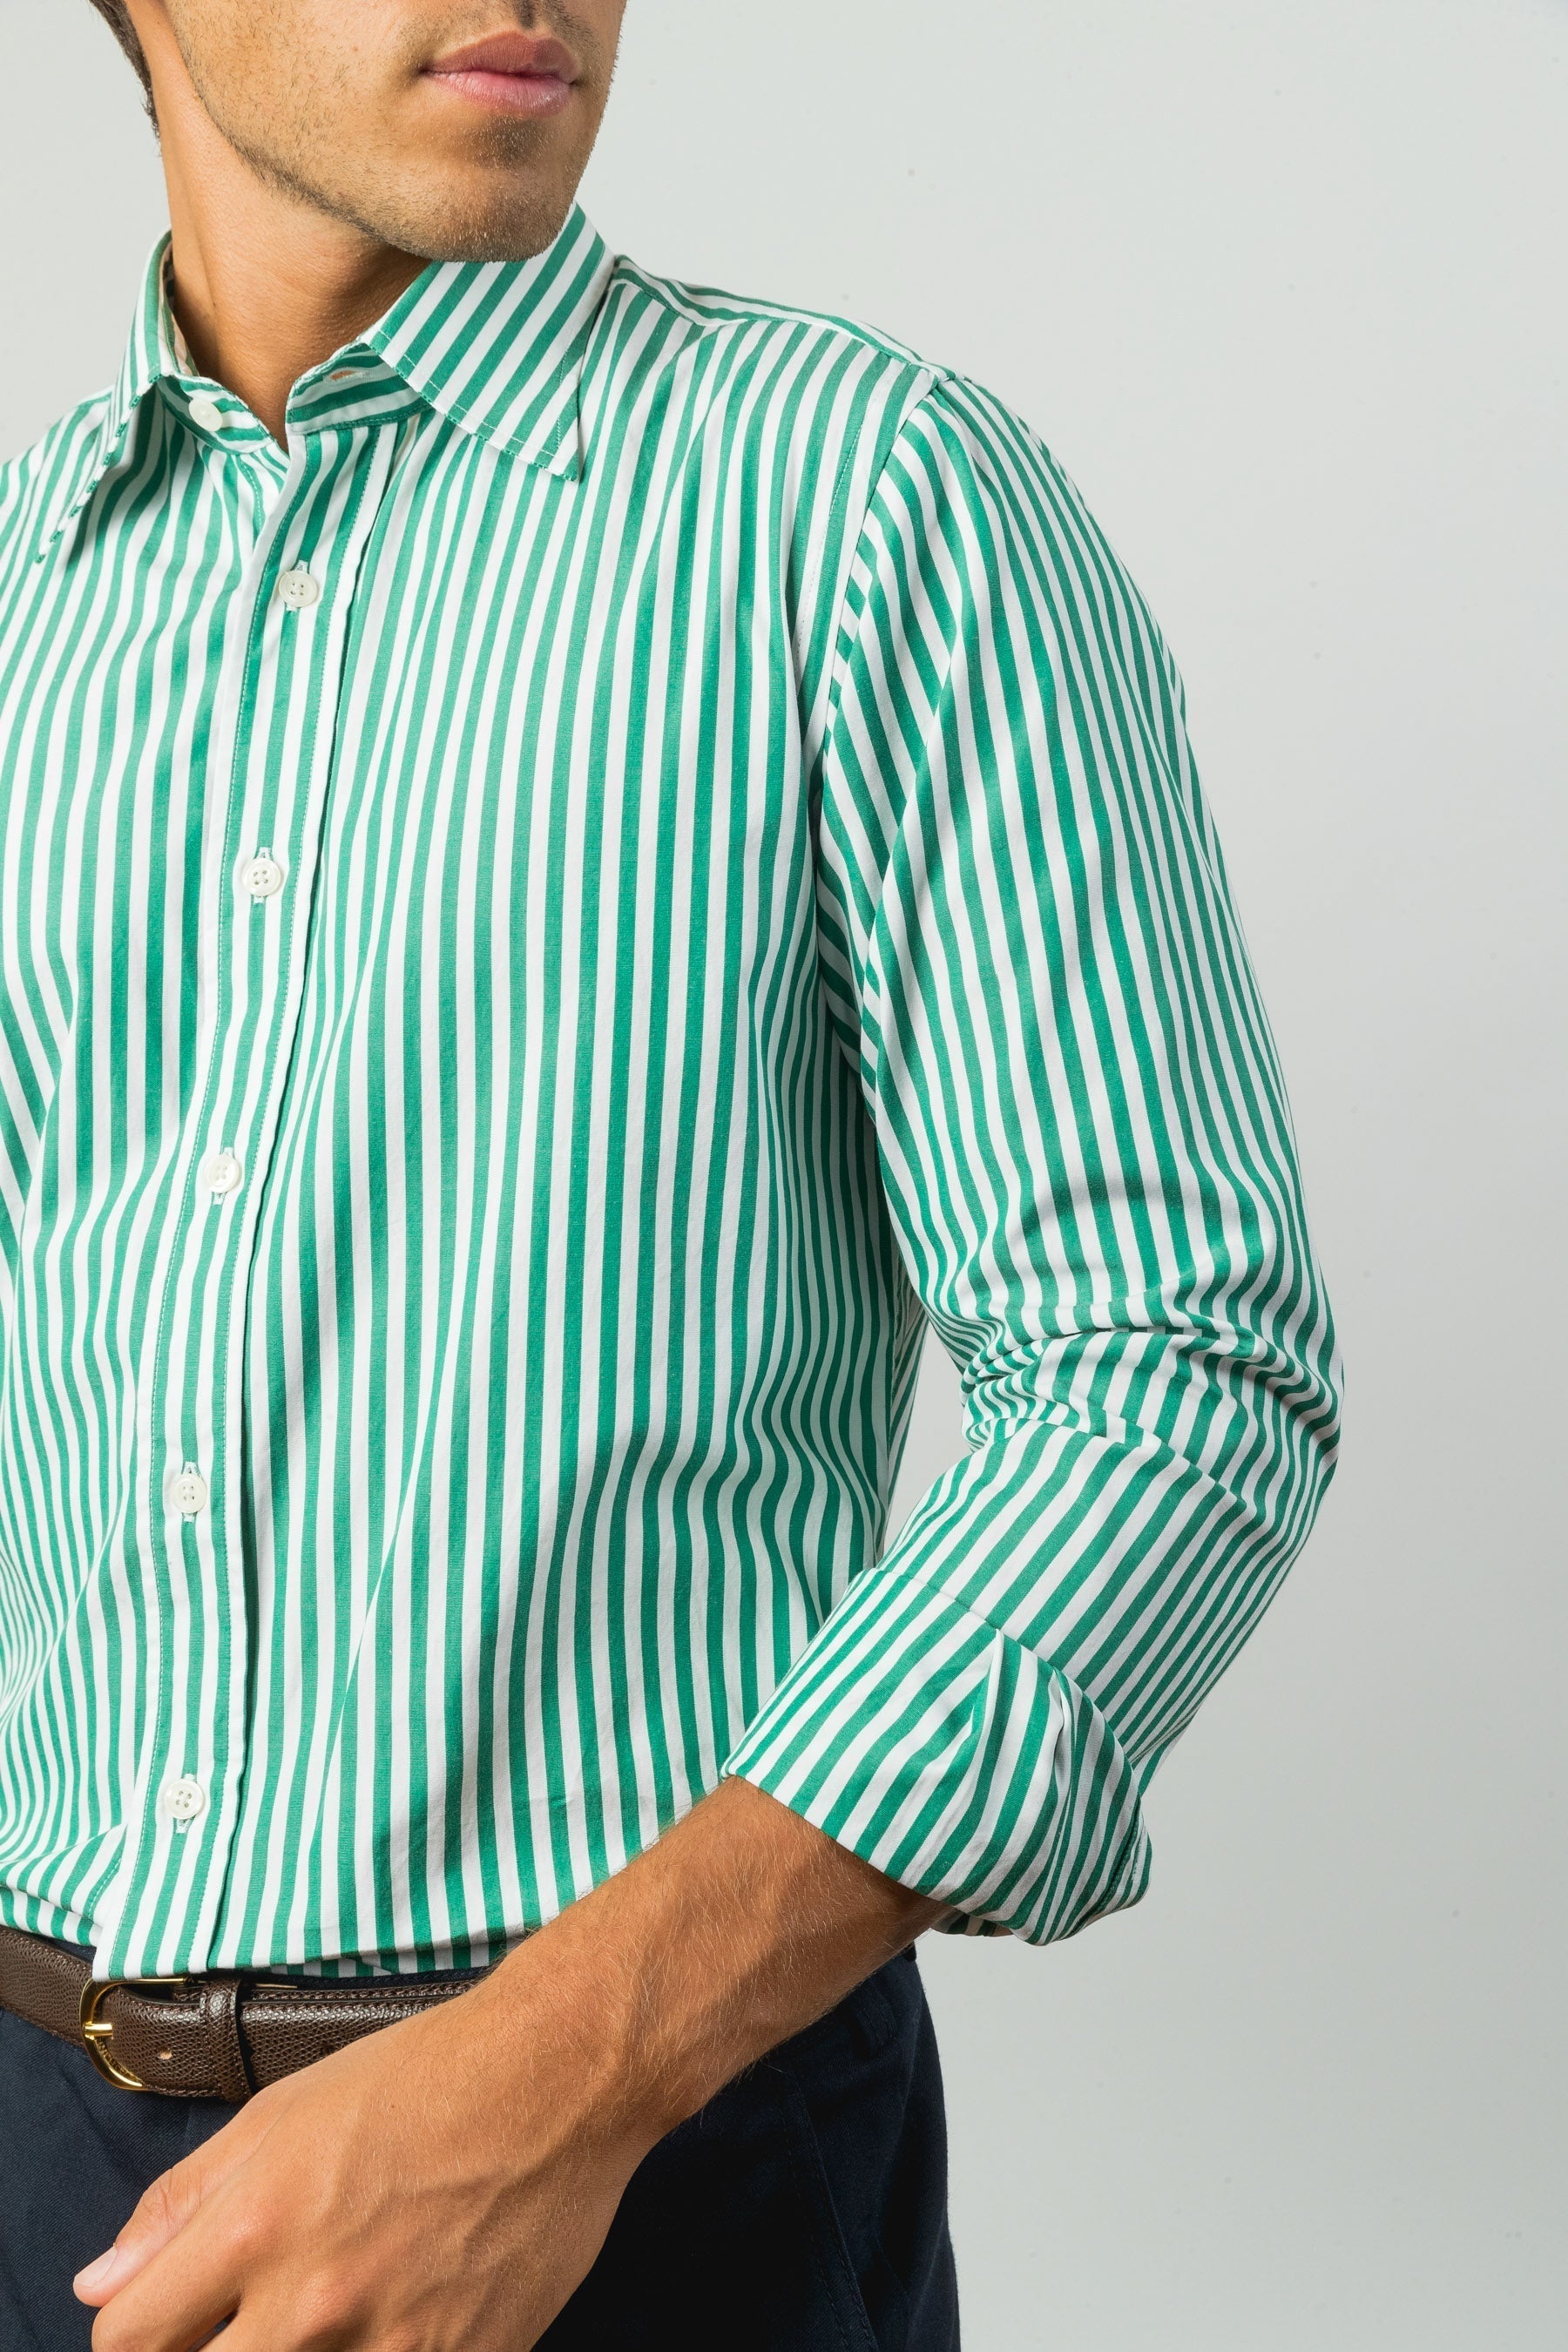 AN IVY Green Striped Poplin Shirt